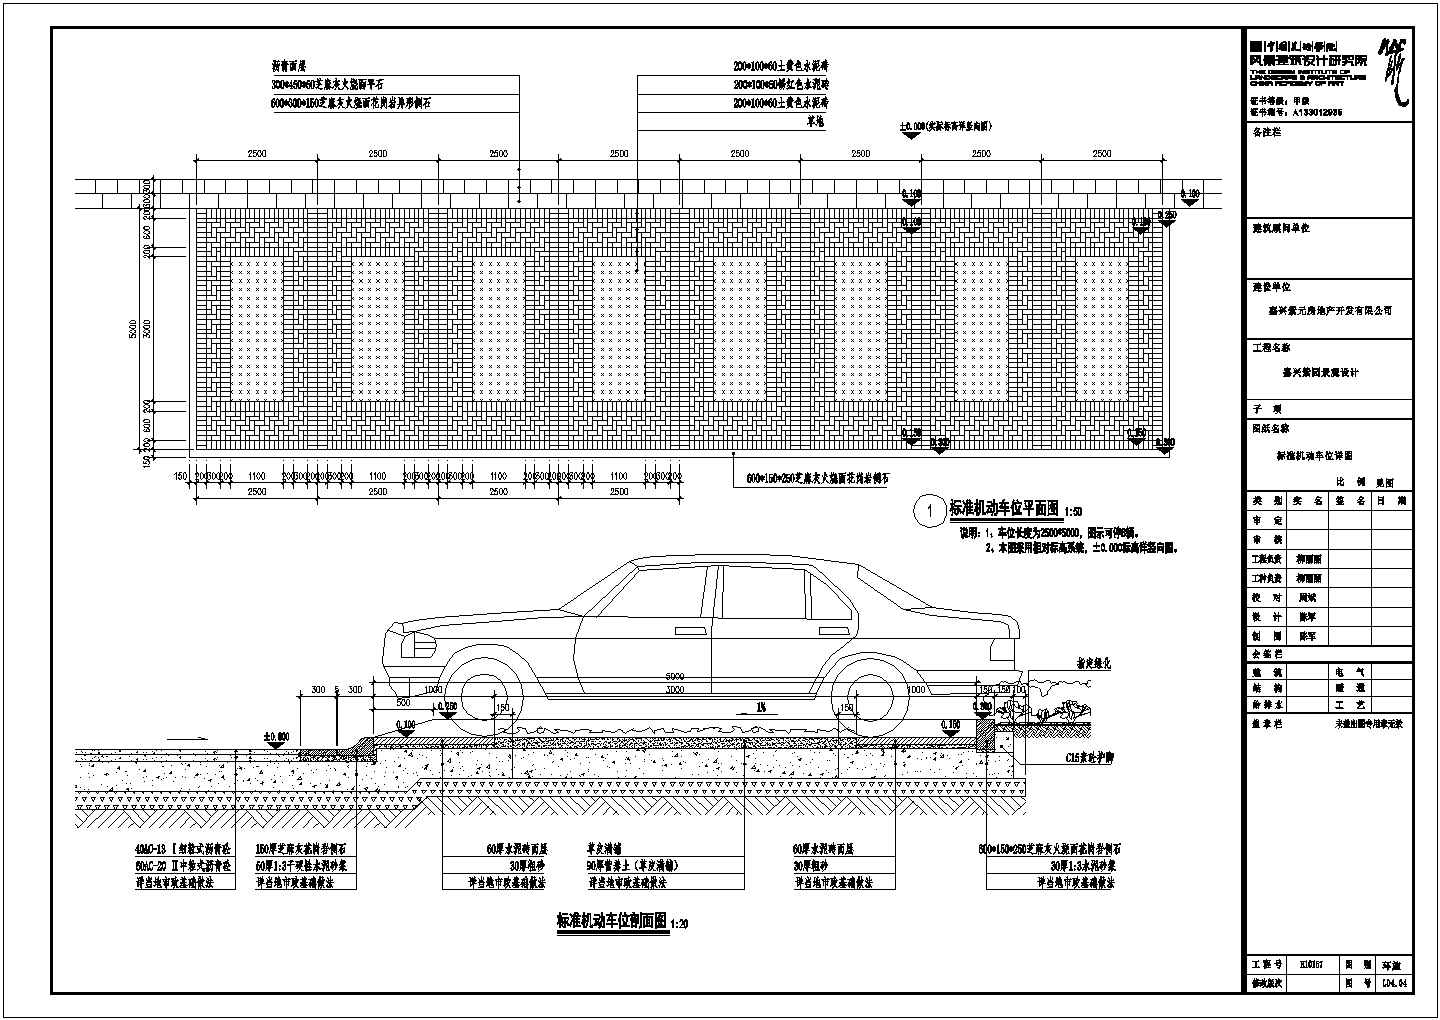 嘉兴紫园景观工程停车场及车行道设计方案图